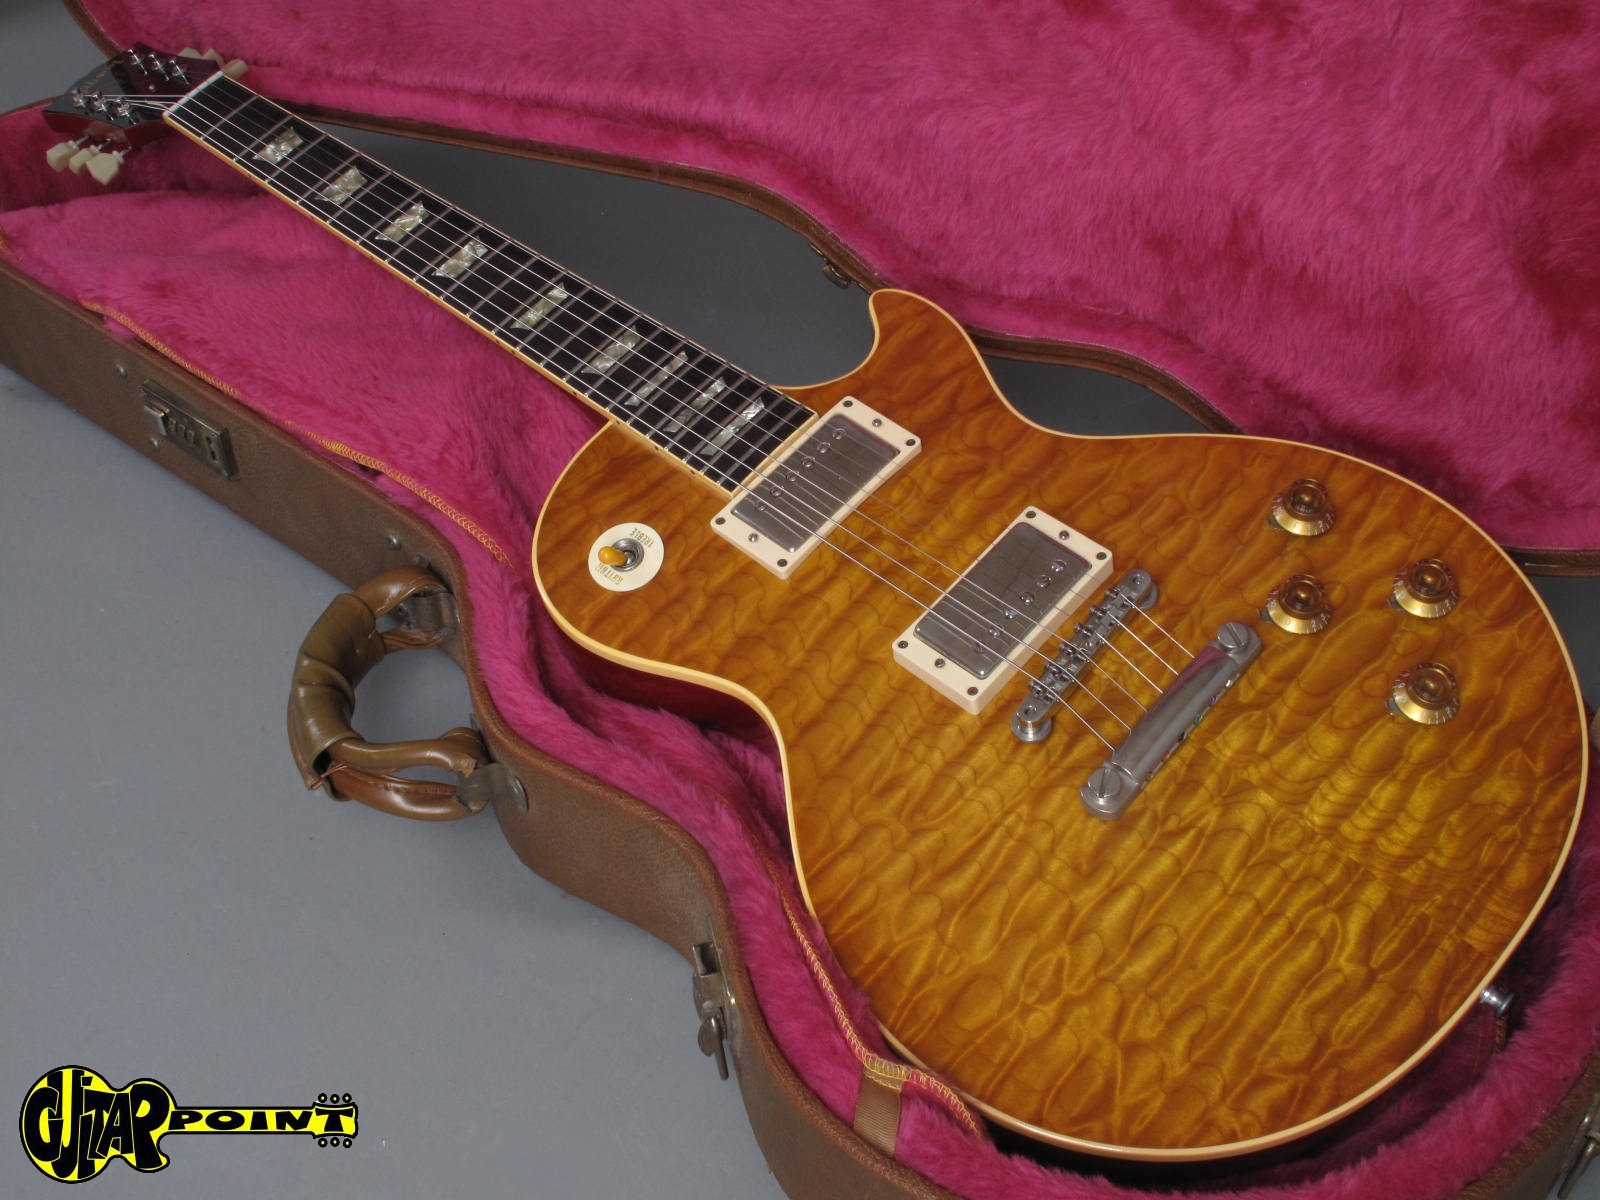 Gebrauchte Gibson Les Paul Standards kaufen und verkaufen auf Legendary-Guitars.com